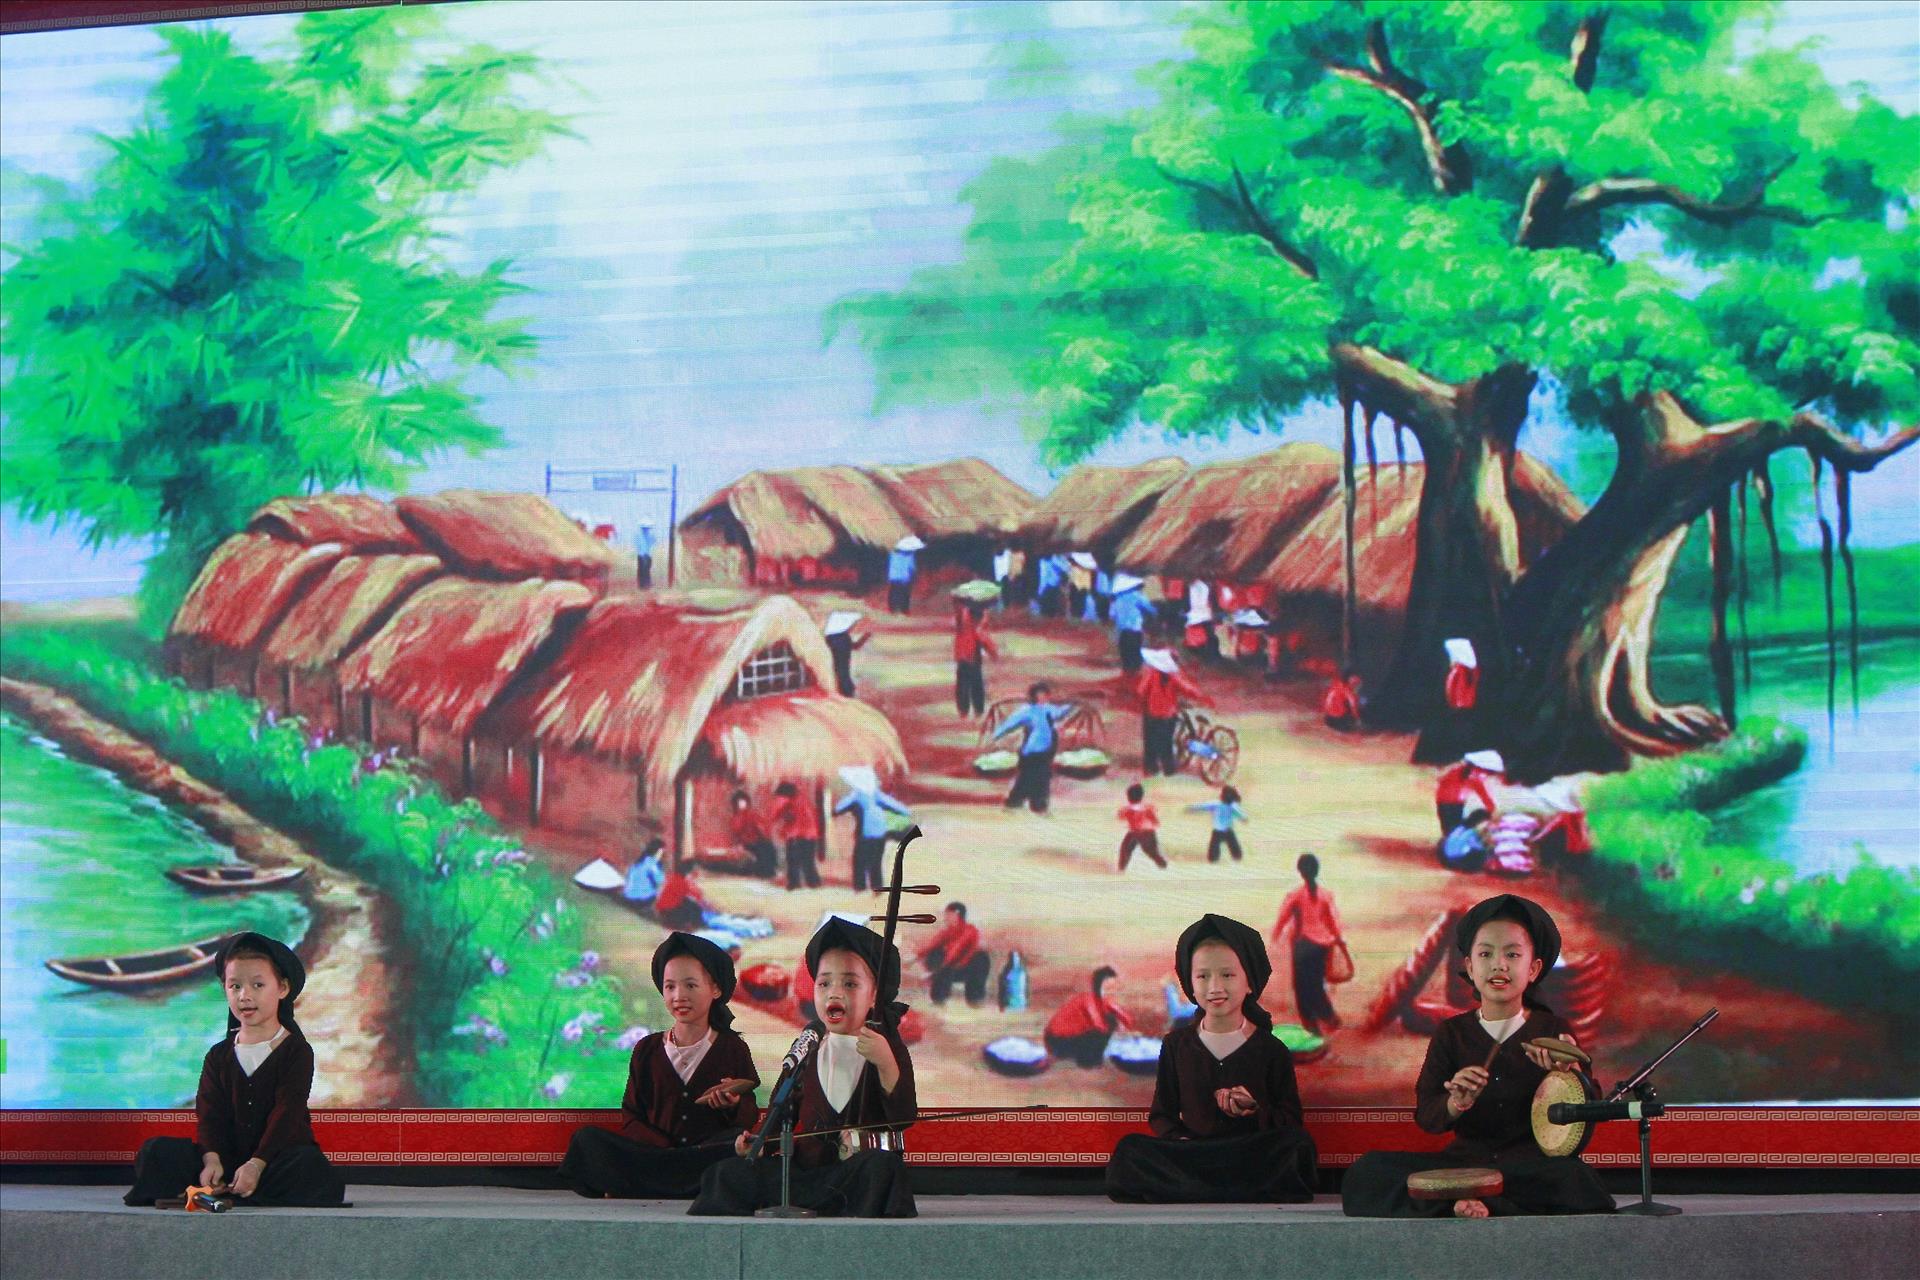 Liên hoan hát Xẩm Ninh Bình: Đó là sự kiện âm nhạc được mong đợi nhất tại Ninh Bình trong năm. Liên hoan hát Xẩm Ninh Bình được tổ chức để thúc đẩy và giữ gìn giá trị văn hóa dân tộc. Đừng bỏ lỡ cơ hội được nghe những giai điệu Xẩm trong không khí nhộn nhịp tại Ninh Bình.